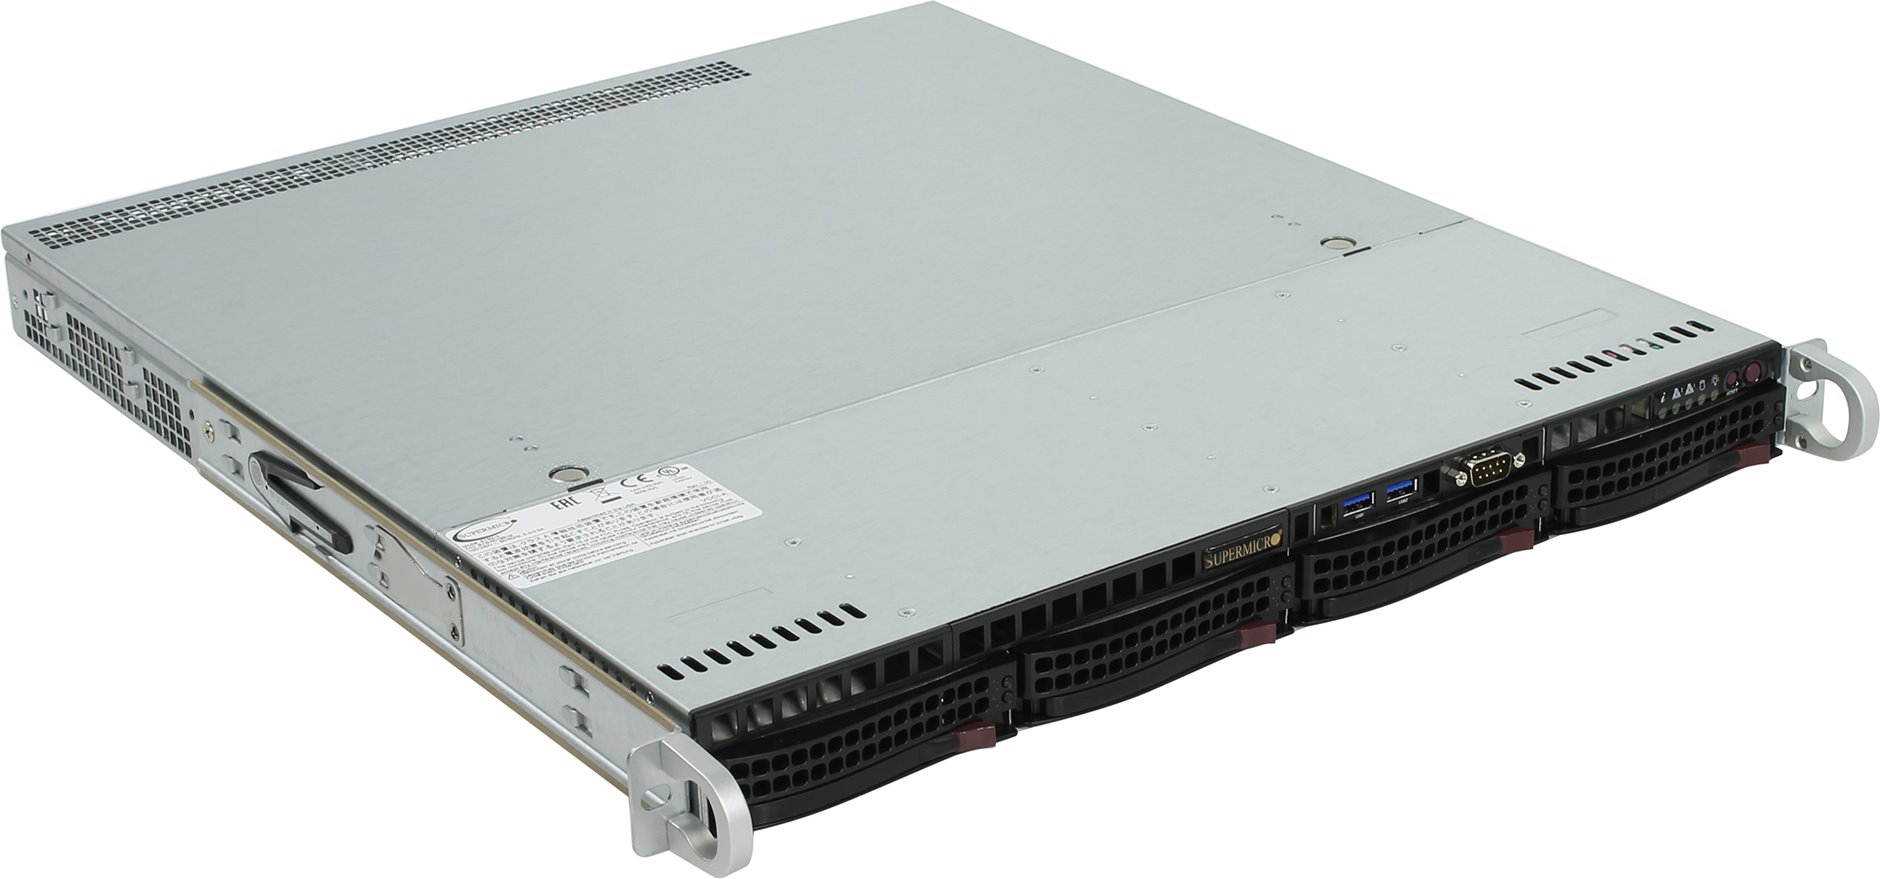 Серверная платформа SuperMicro SYS-5019S-MT, 1U, LGA1151, Intel C236, 4 x DDR4, 4 x 3.5" 4xSATA, 2x10 Gigabit Ethernet 10 Гбит/с, 350 Вт